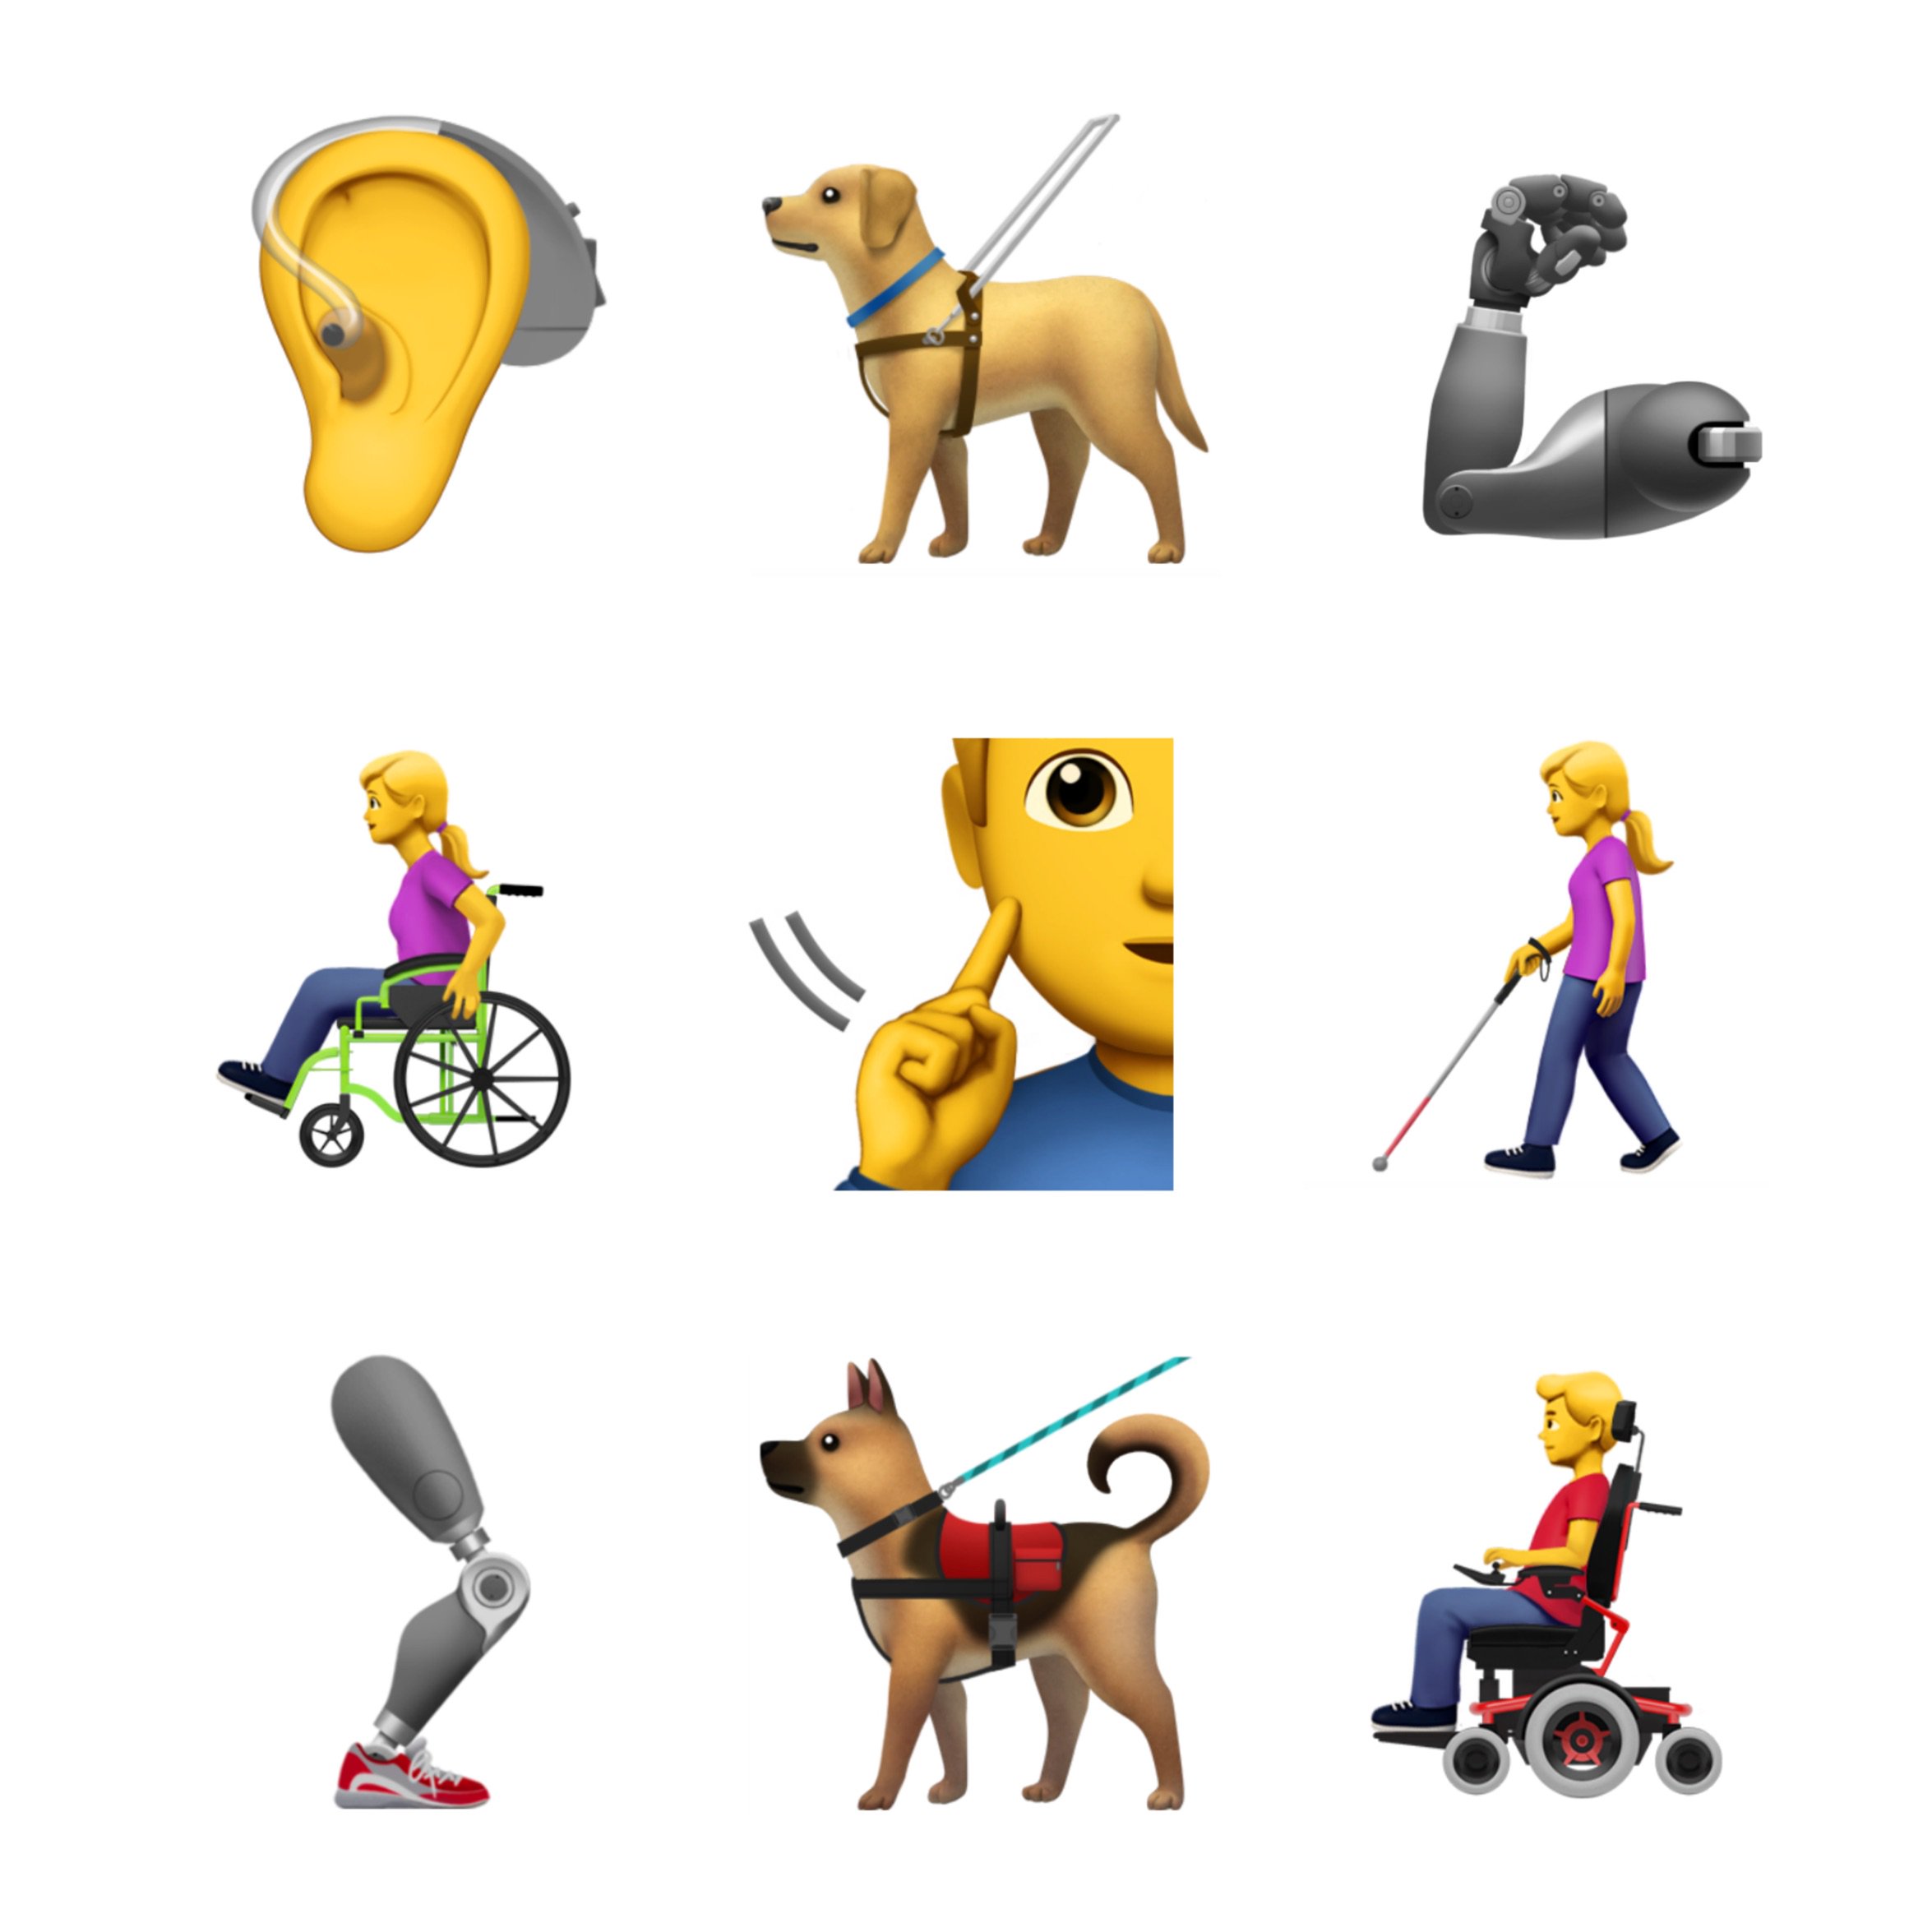 Apple, engelli bireyler için yeni emoji önerileri sundu